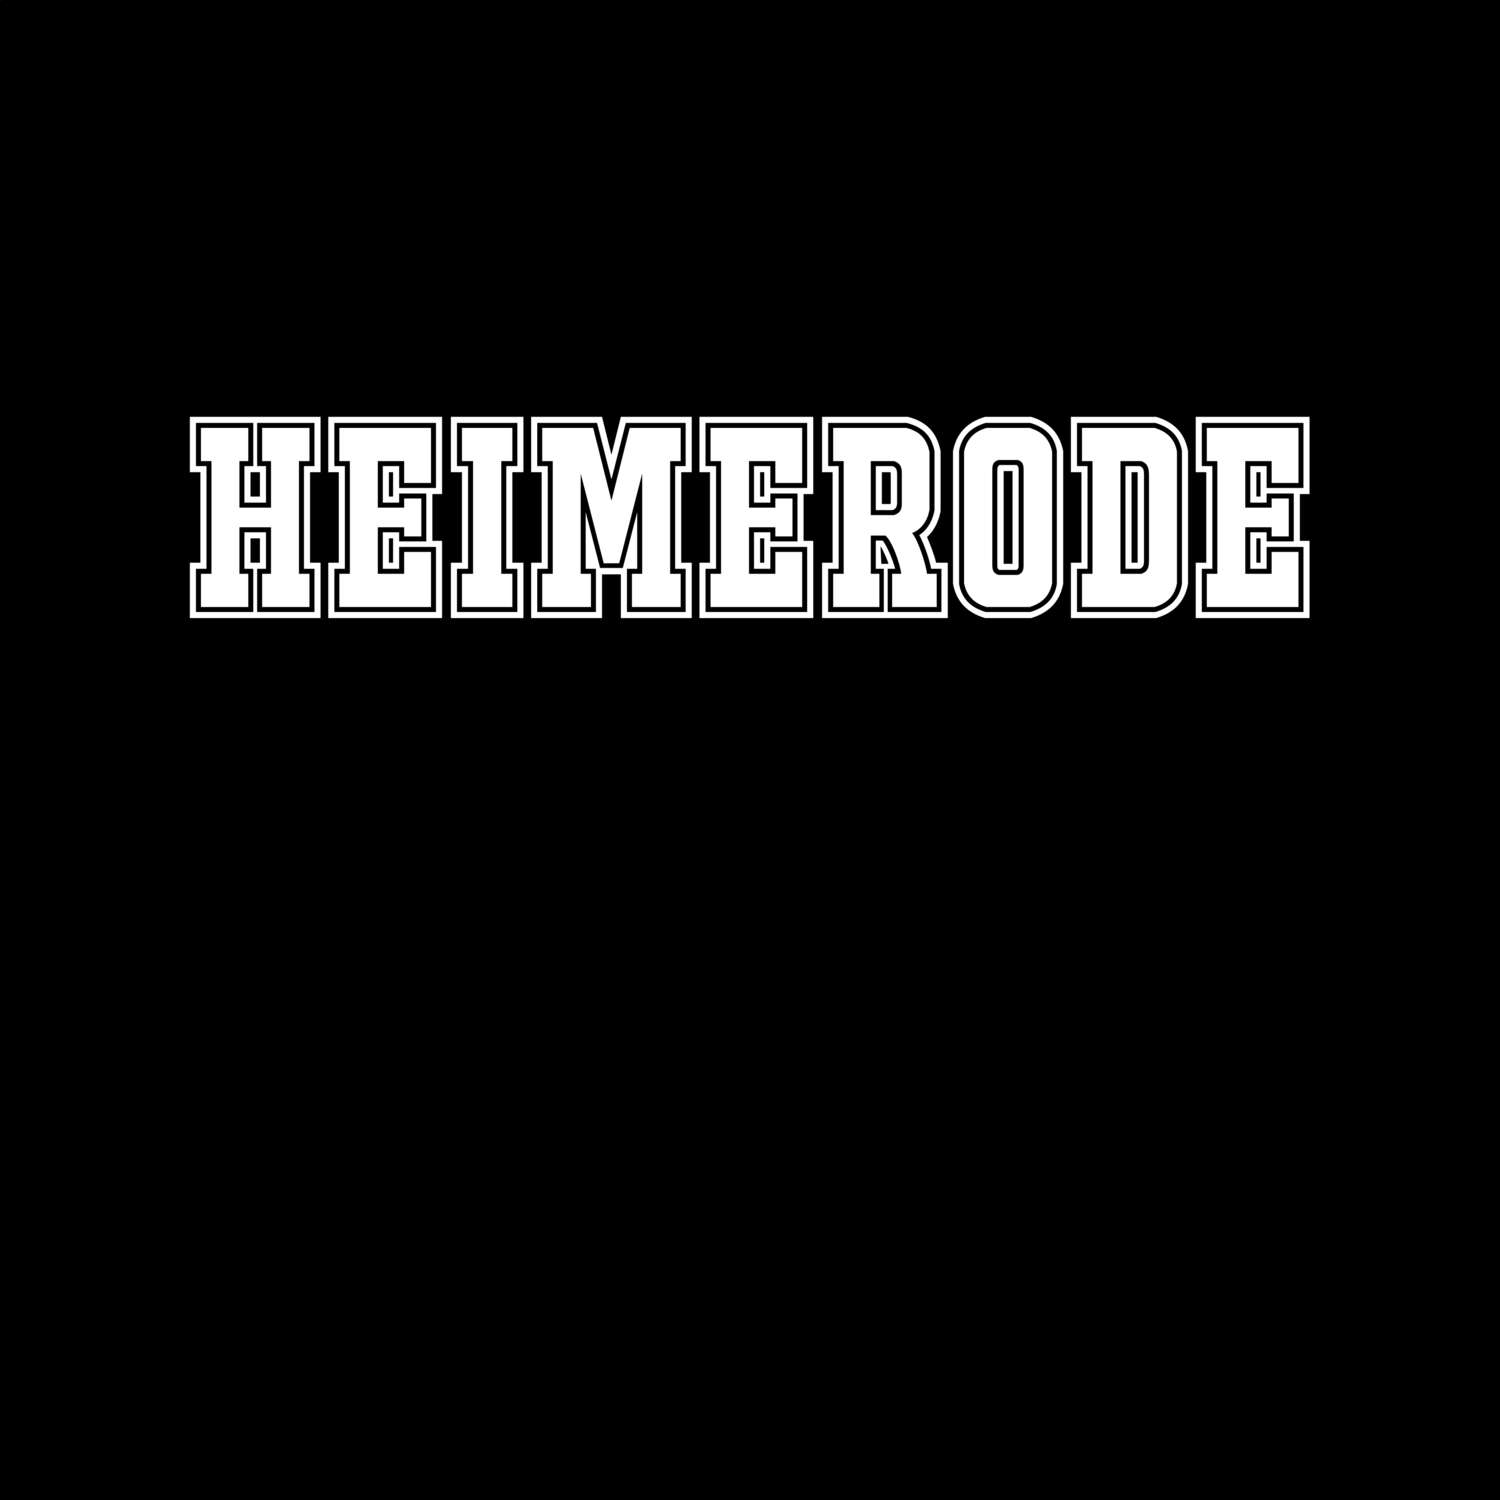 Heimerode T-Shirt »Classic«